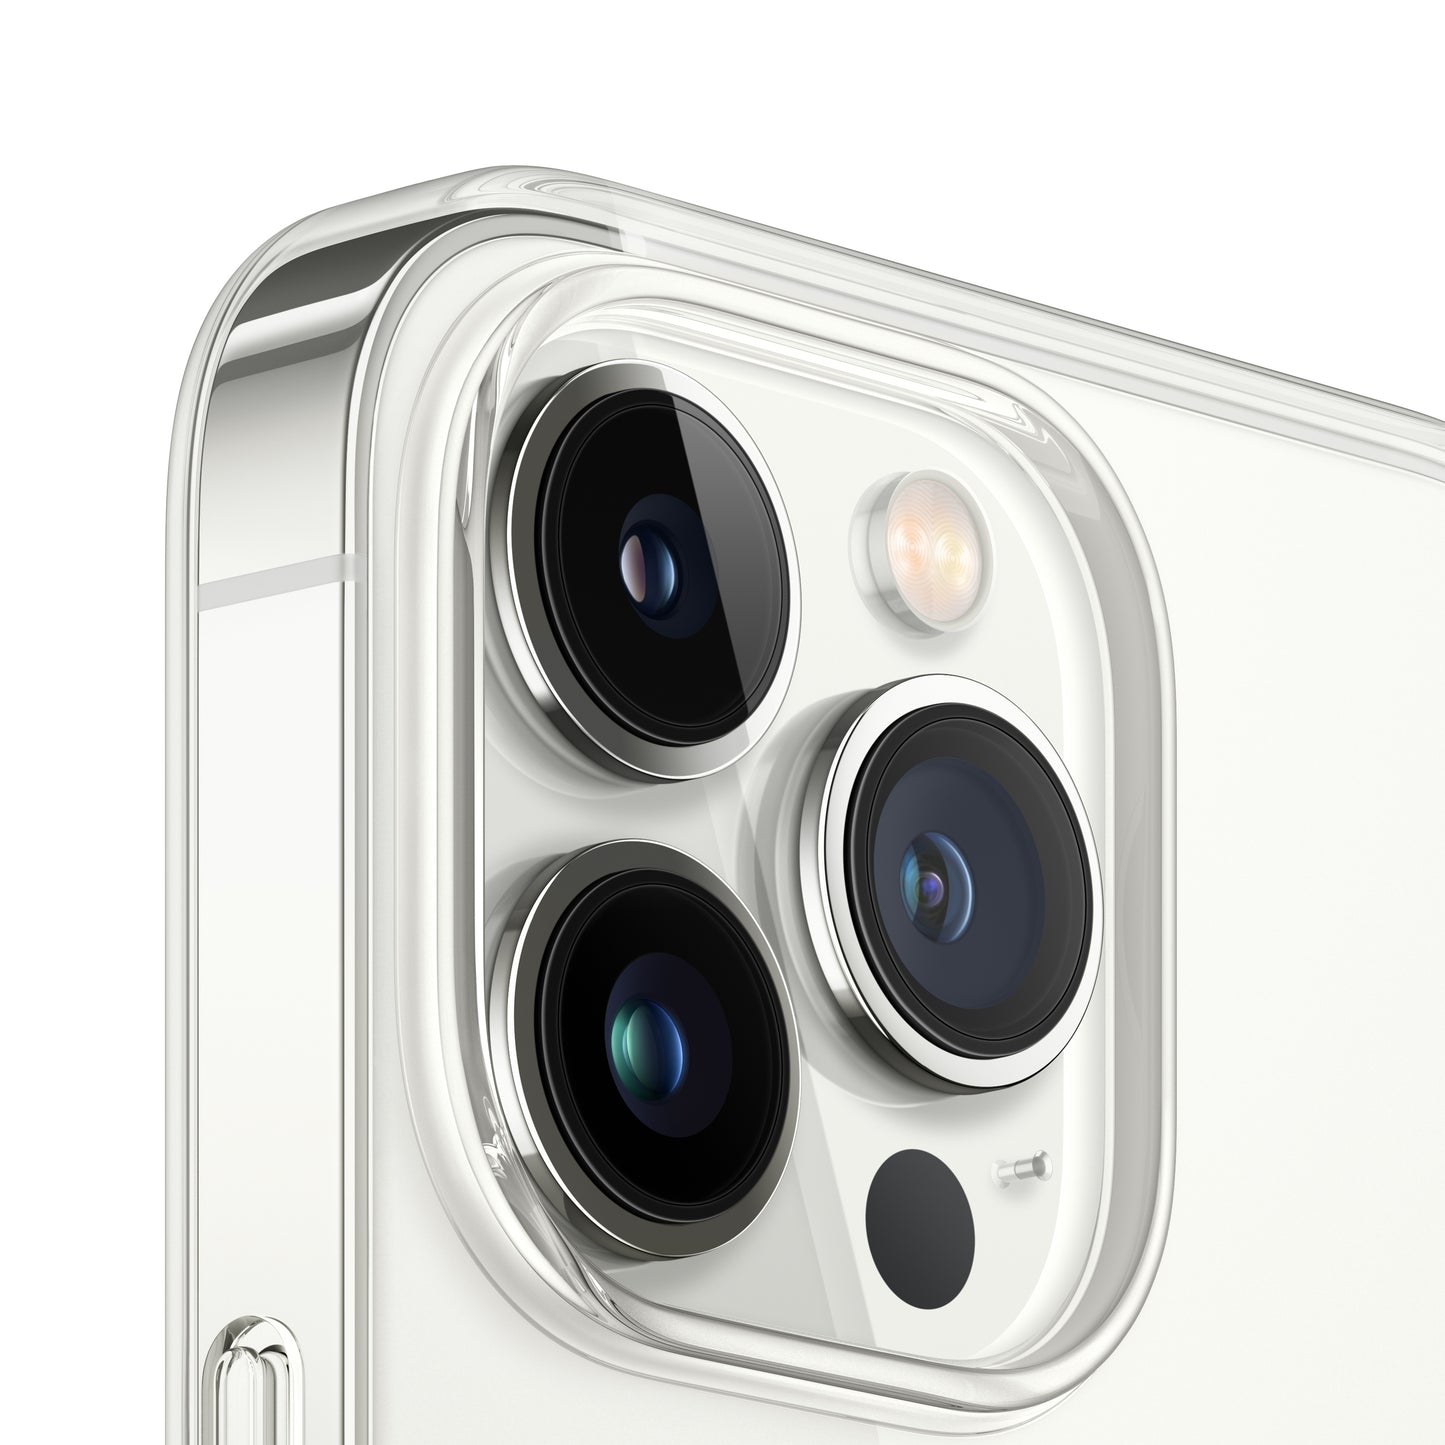 Estuche transparente con MagSafe para el iPhone 13 Pro